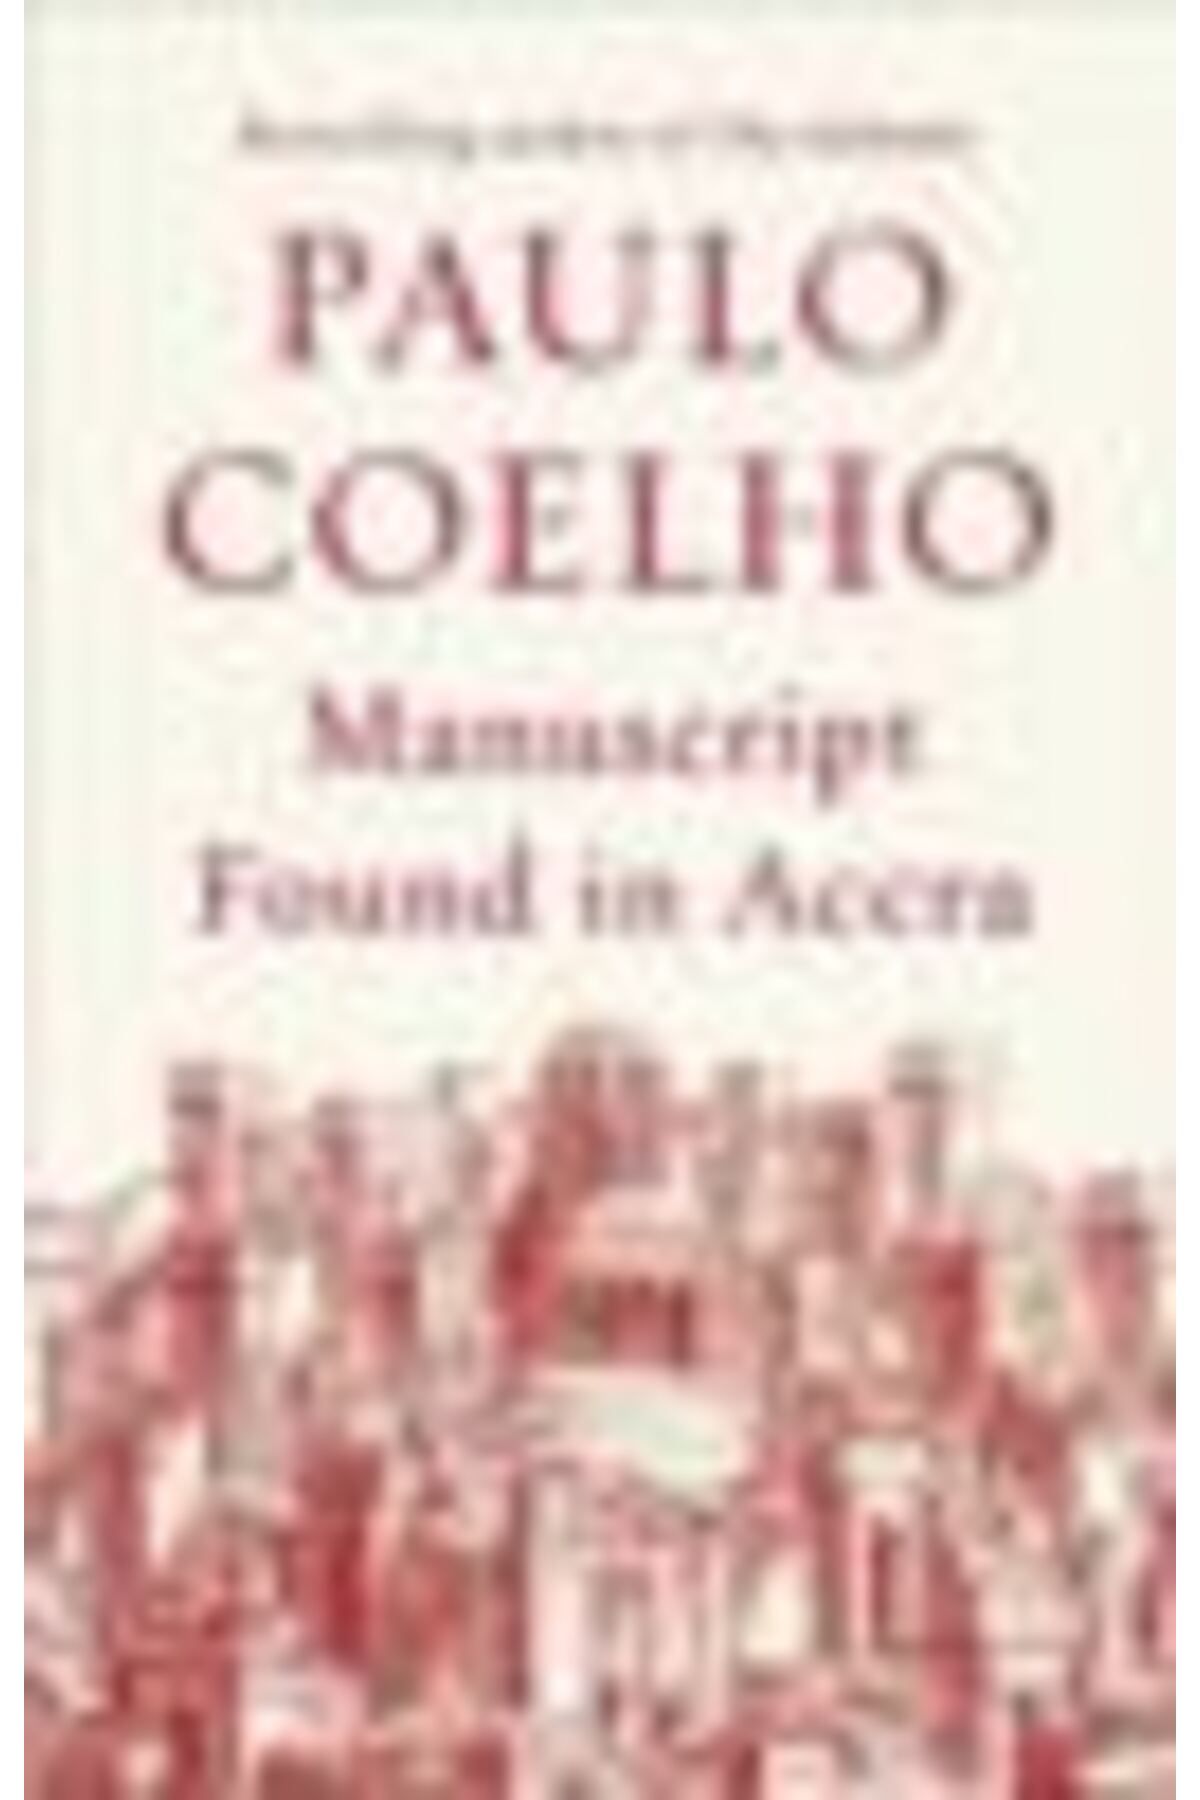 MANUSCRIPT FOUND IN ACCRA. Paulo Coelho - 9780345805065